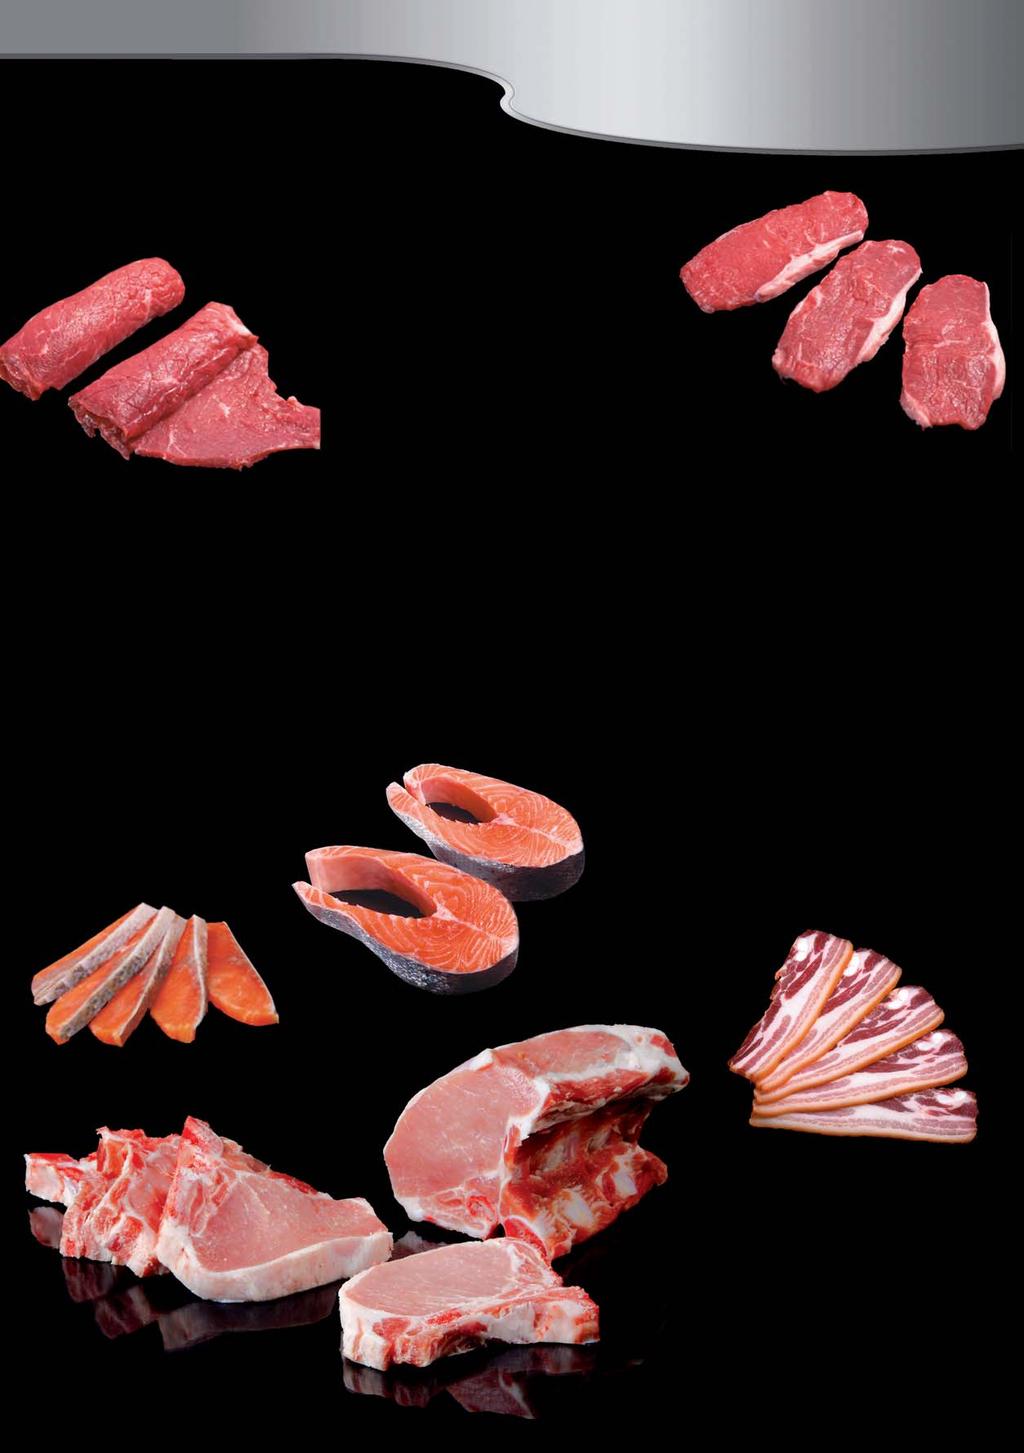 حس ب( FOODLOGISTIK Le - de Foodlogistik - conçu en fonction de vos besoins particuliers les côtelettes, le cou de porc, l'escalope, olive de bœuf, le Roastbeef, la poitrine de porc, le porc fumé, les